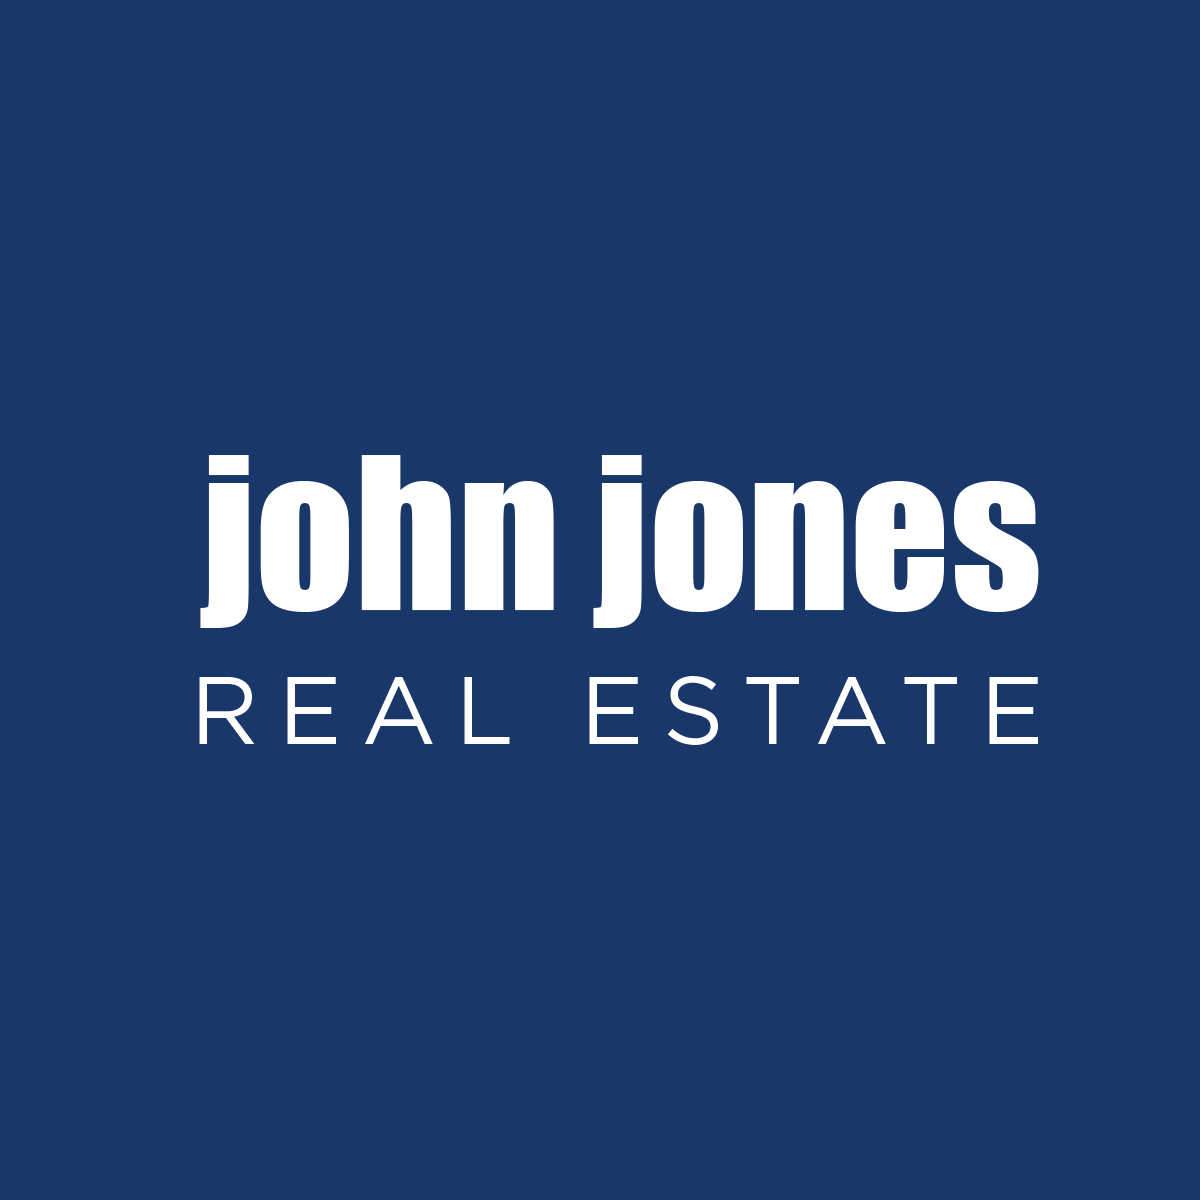 John Jones Real Estate